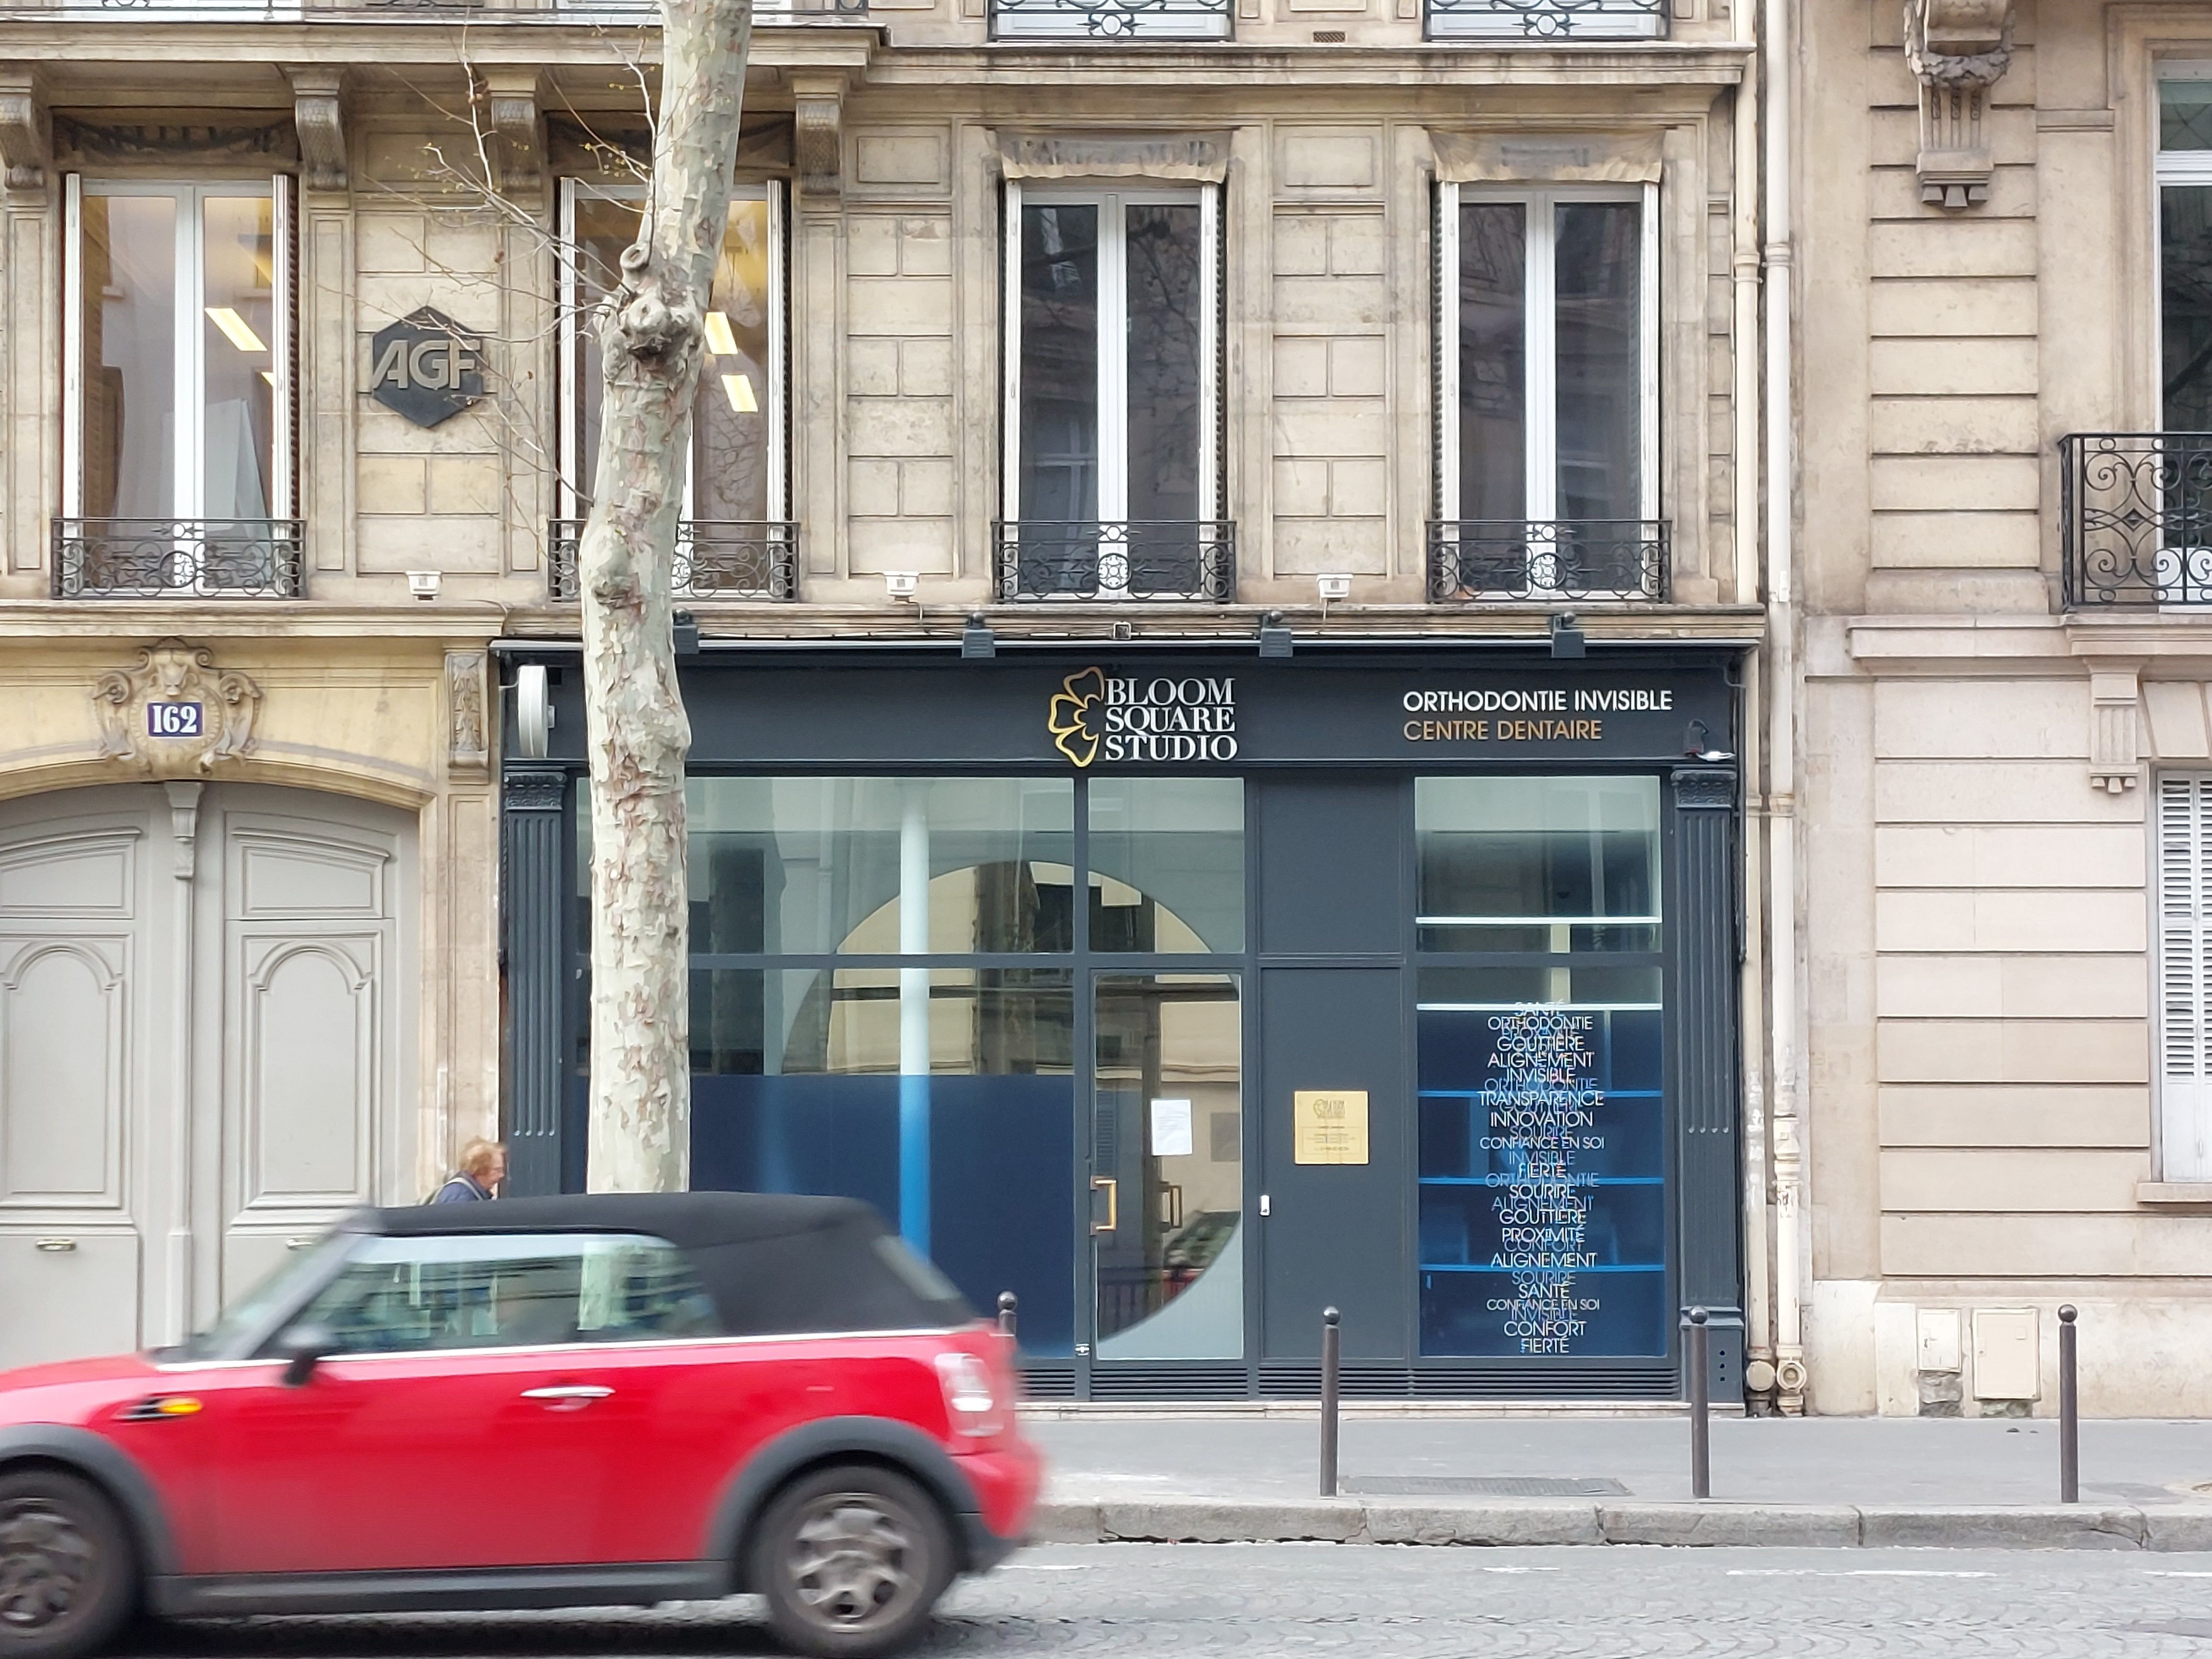 Le centre dentaire Bloomsquare studio, boulevard Haussmann, est fermé jusqu'à nouvel ordre. LP/Carole Sterlé